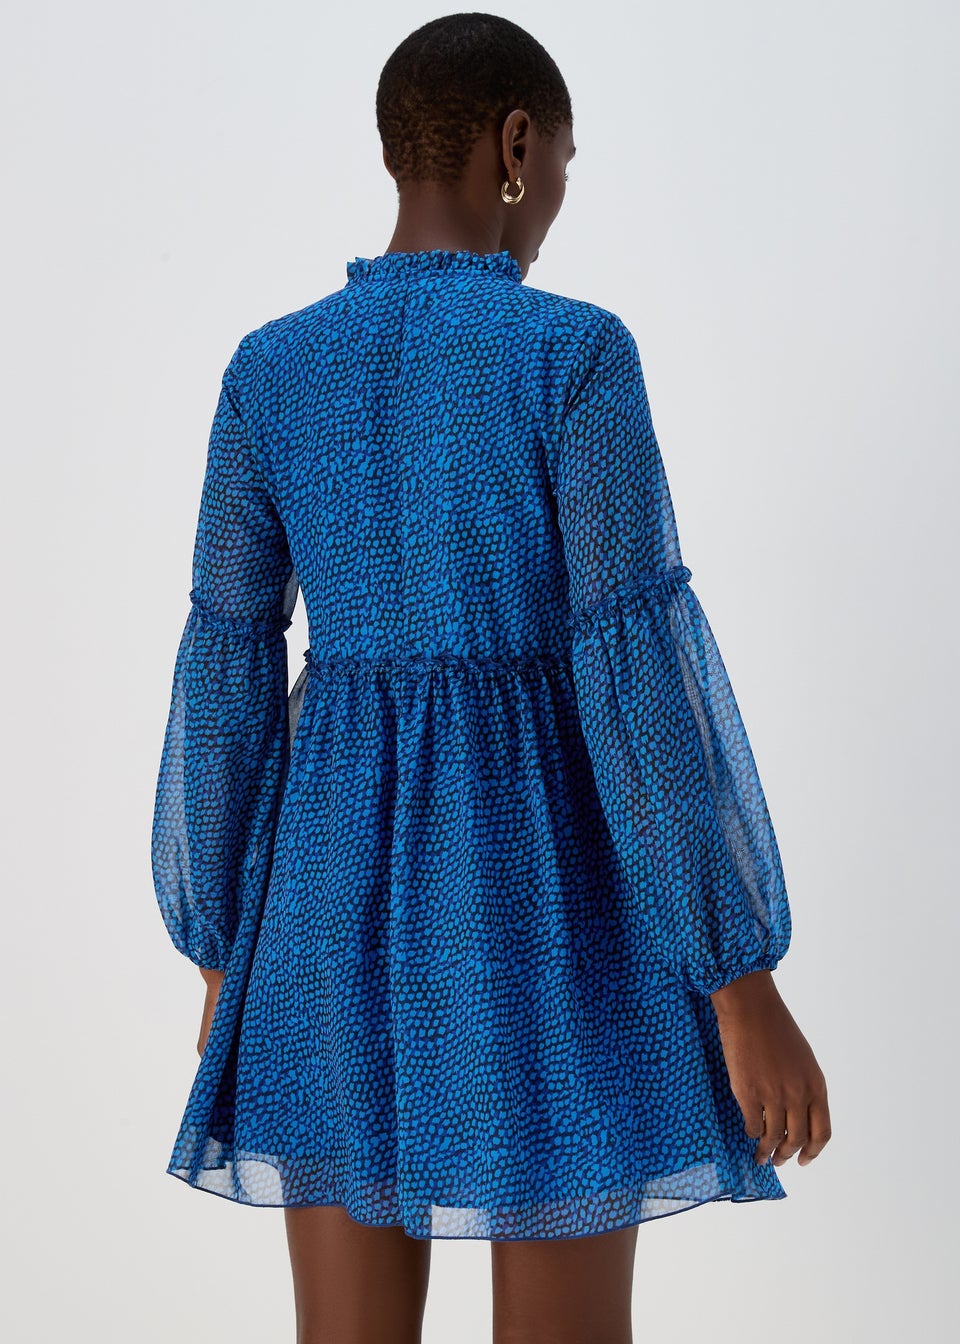 Blue Print Chiffon Mini Dress